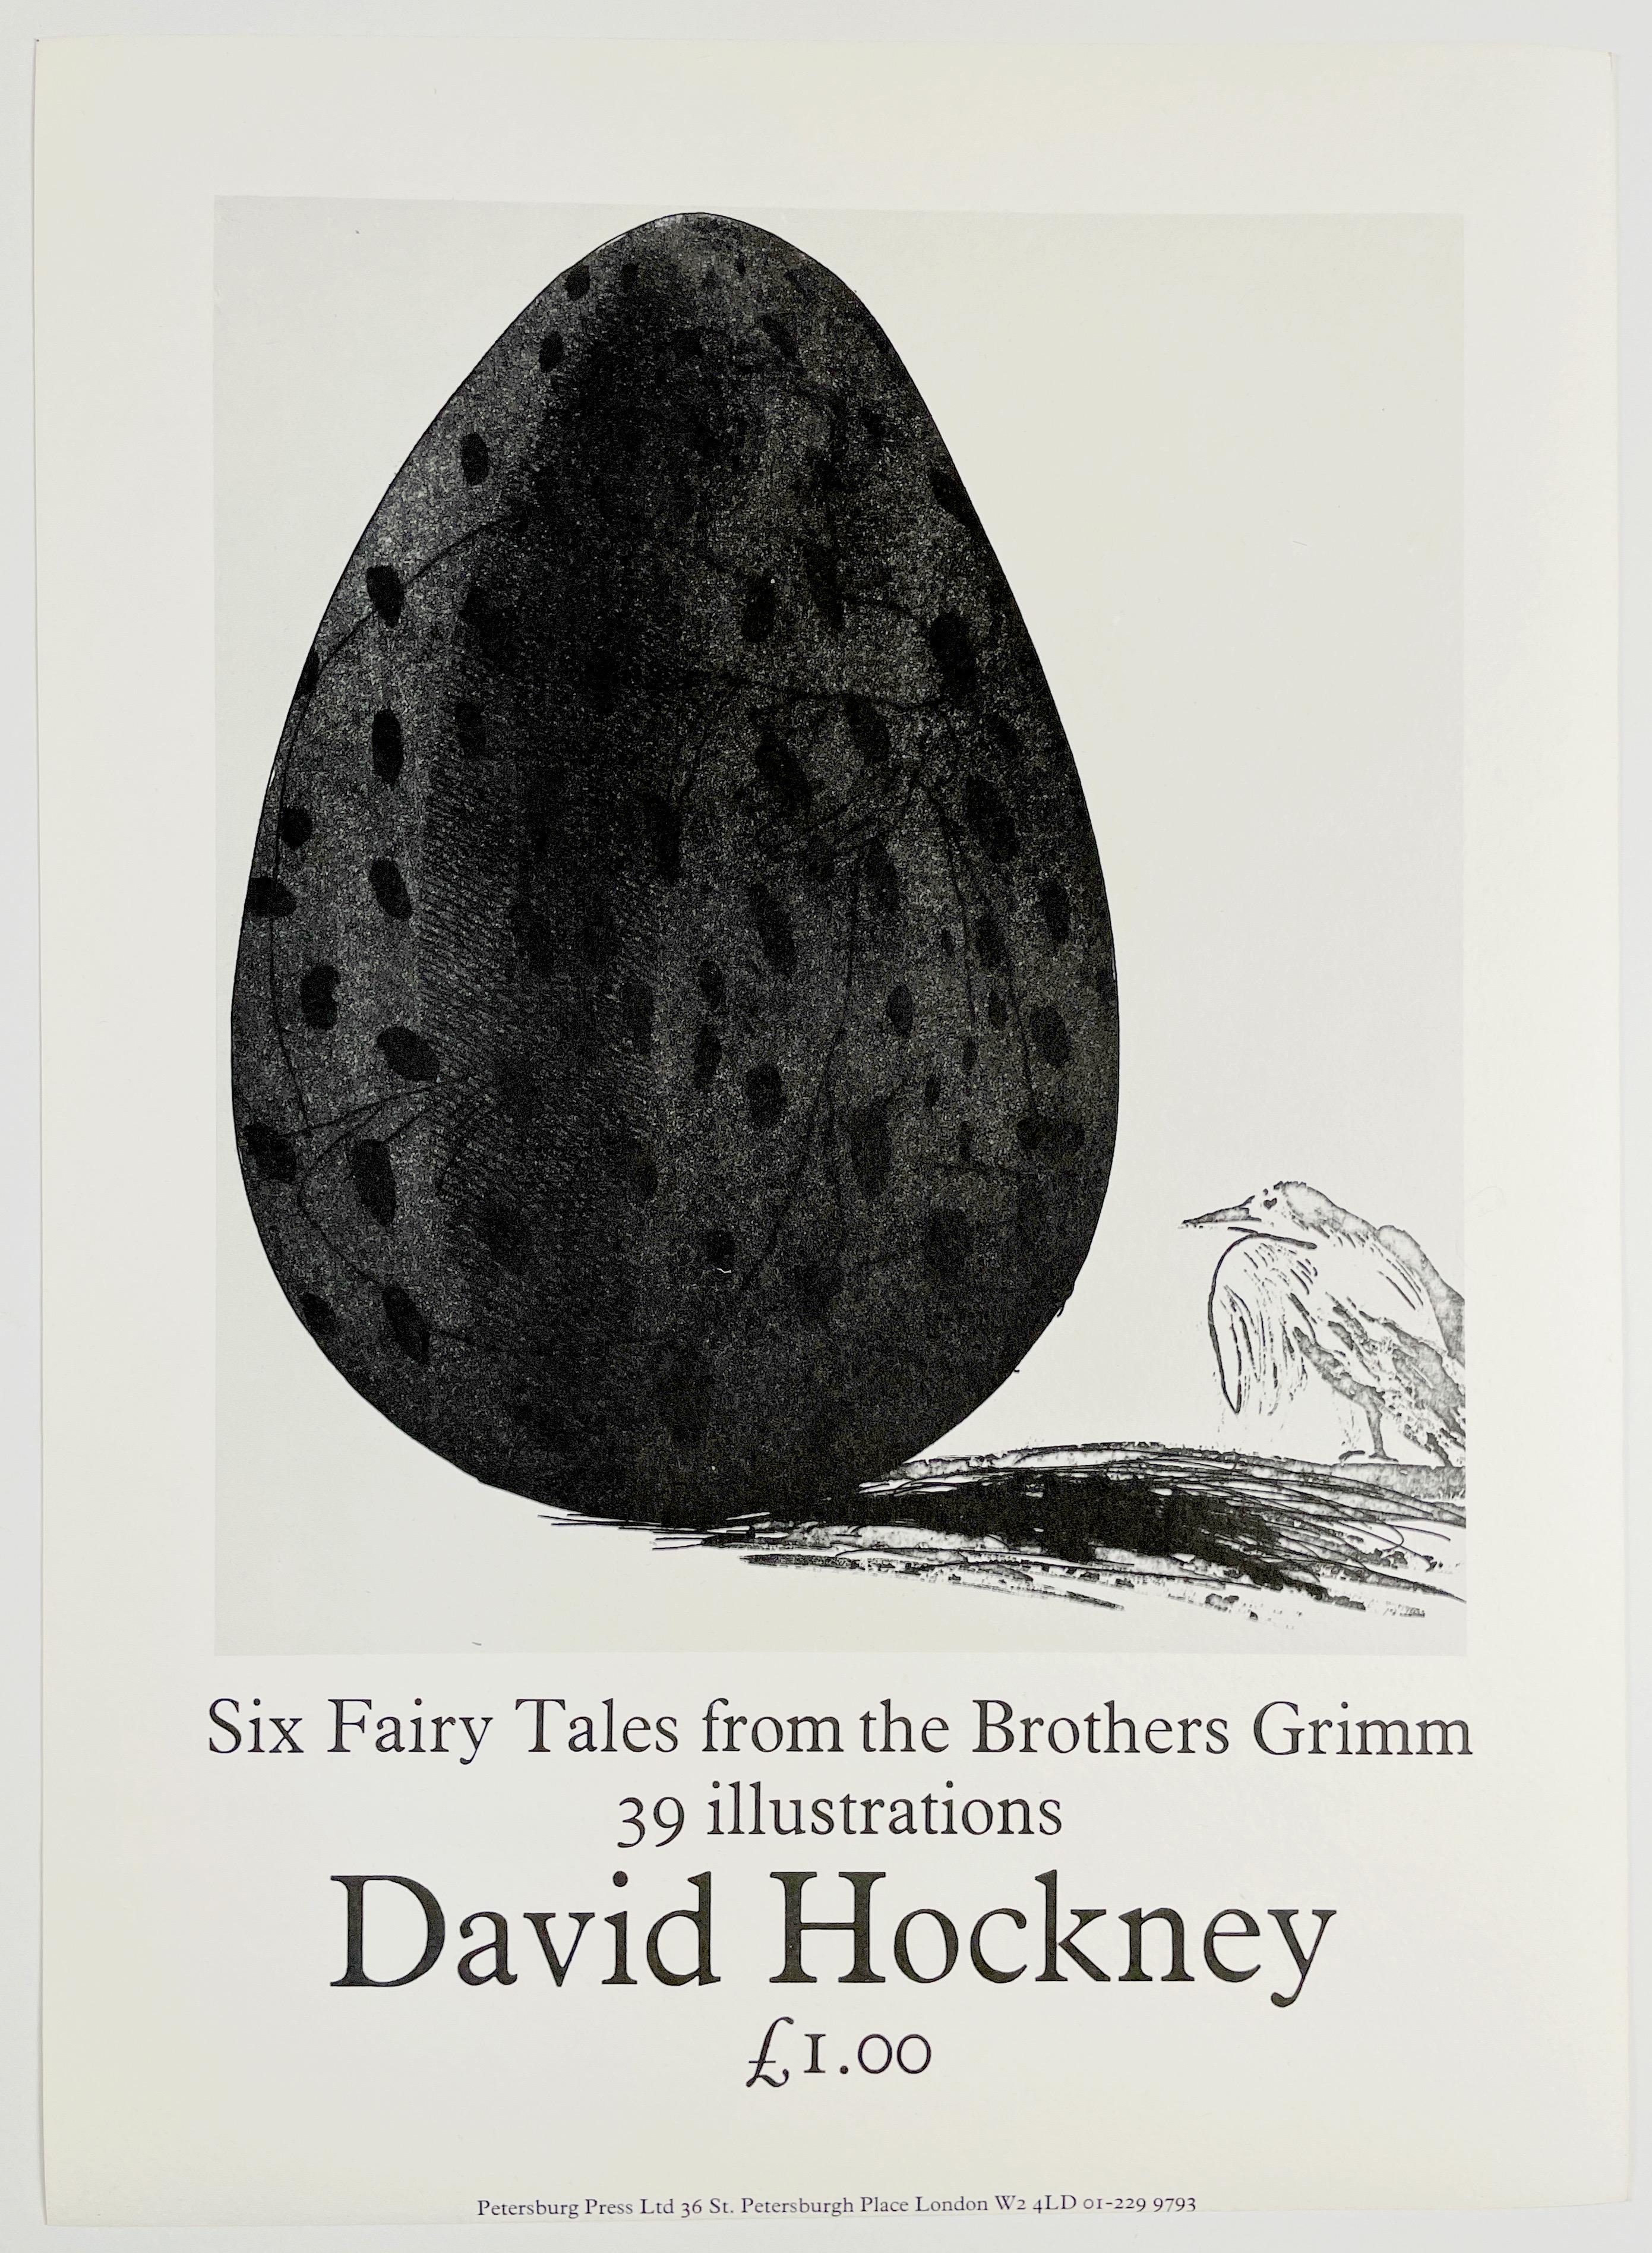 Dieses charmante Vintage-Plakat erinnert an die Veröffentlichung von David Hockneys Six Fairy Tales from the Brothers Grimm. Das Plakat wirbt für eine Miniaturausgabe des Buches, die der Verlag im selben Jahr zum Preis von 1,00 £ herausgebracht hat.